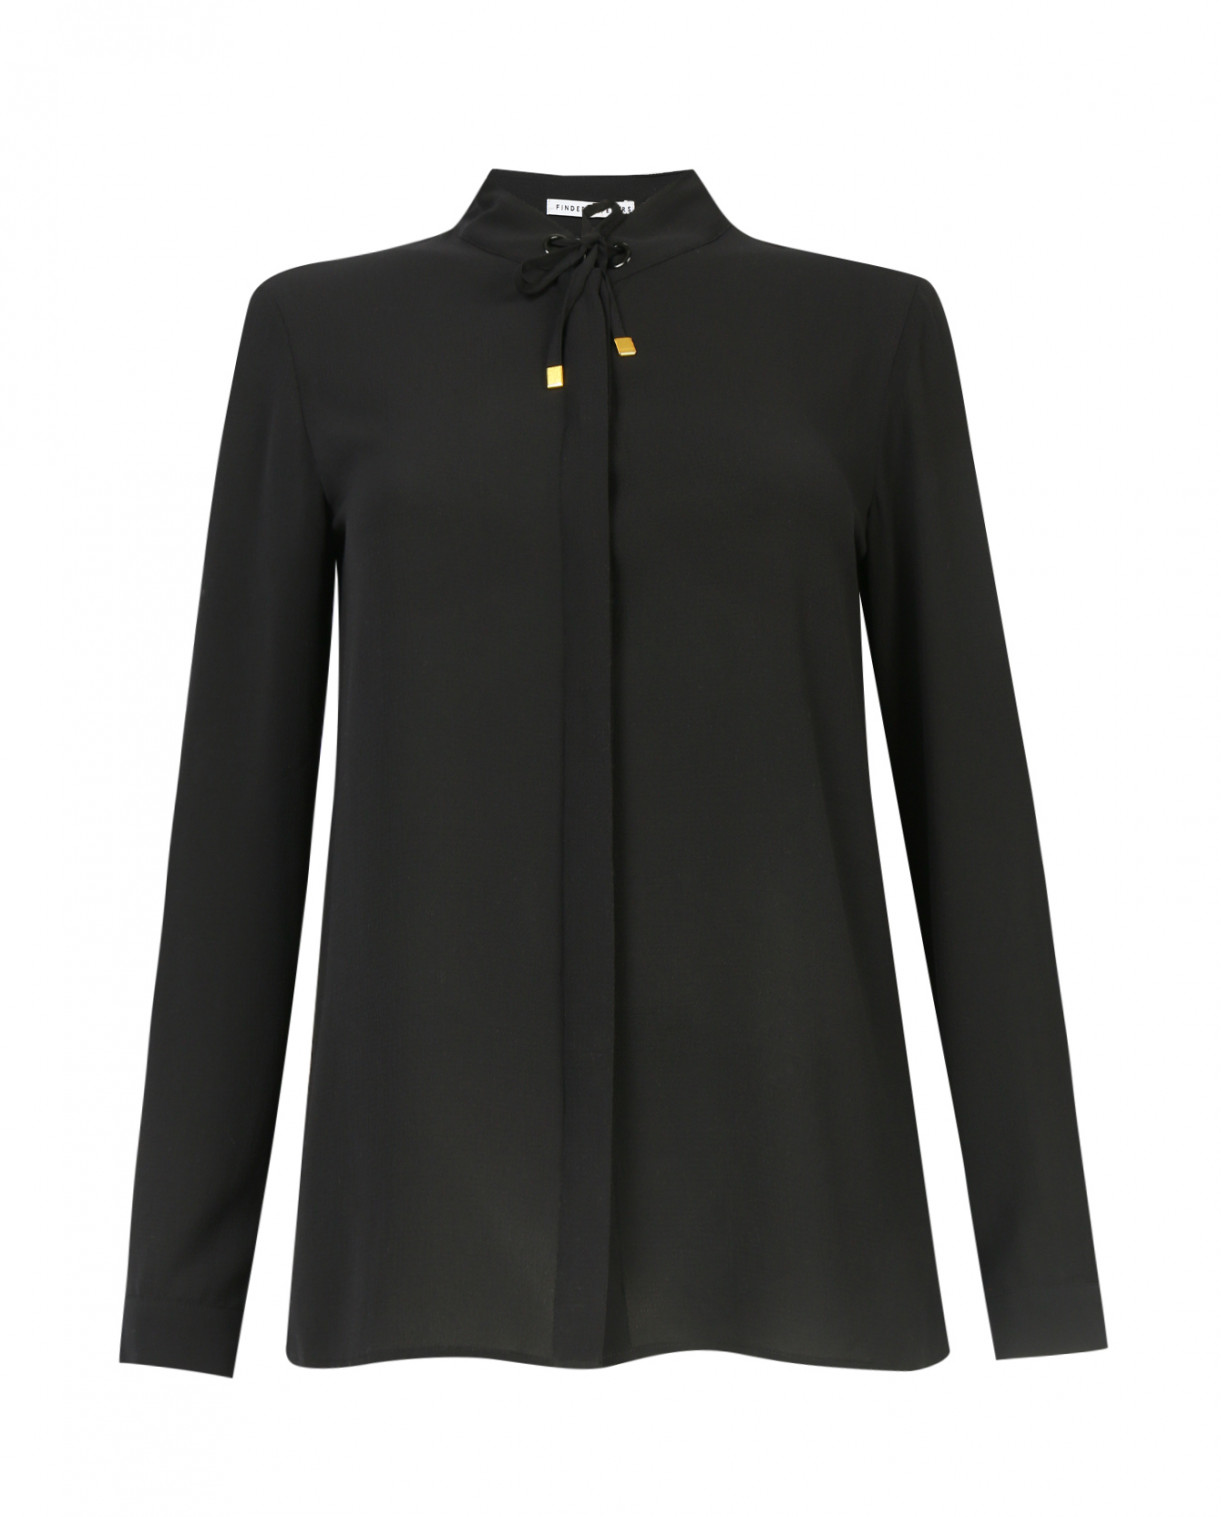 Блуза с декором на воротнике Finders Keepers  –  Общий вид  – Цвет:  Черный